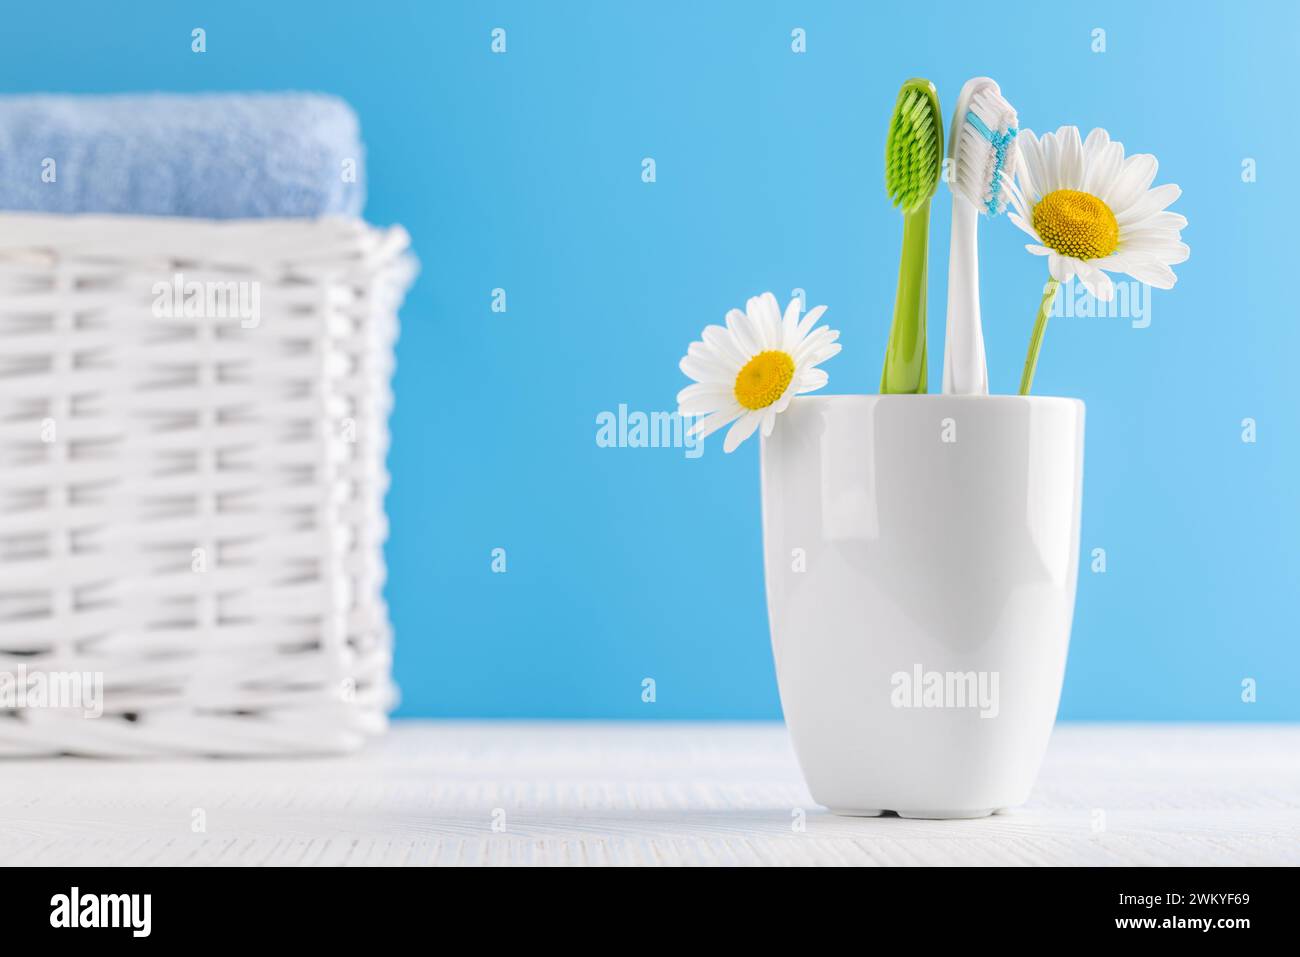 Un'immagine pulita e rinfrescante con spazzolini da denti e articoli da toeletta, che favorisce l'igiene orale e un sorriso luminoso Foto Stock